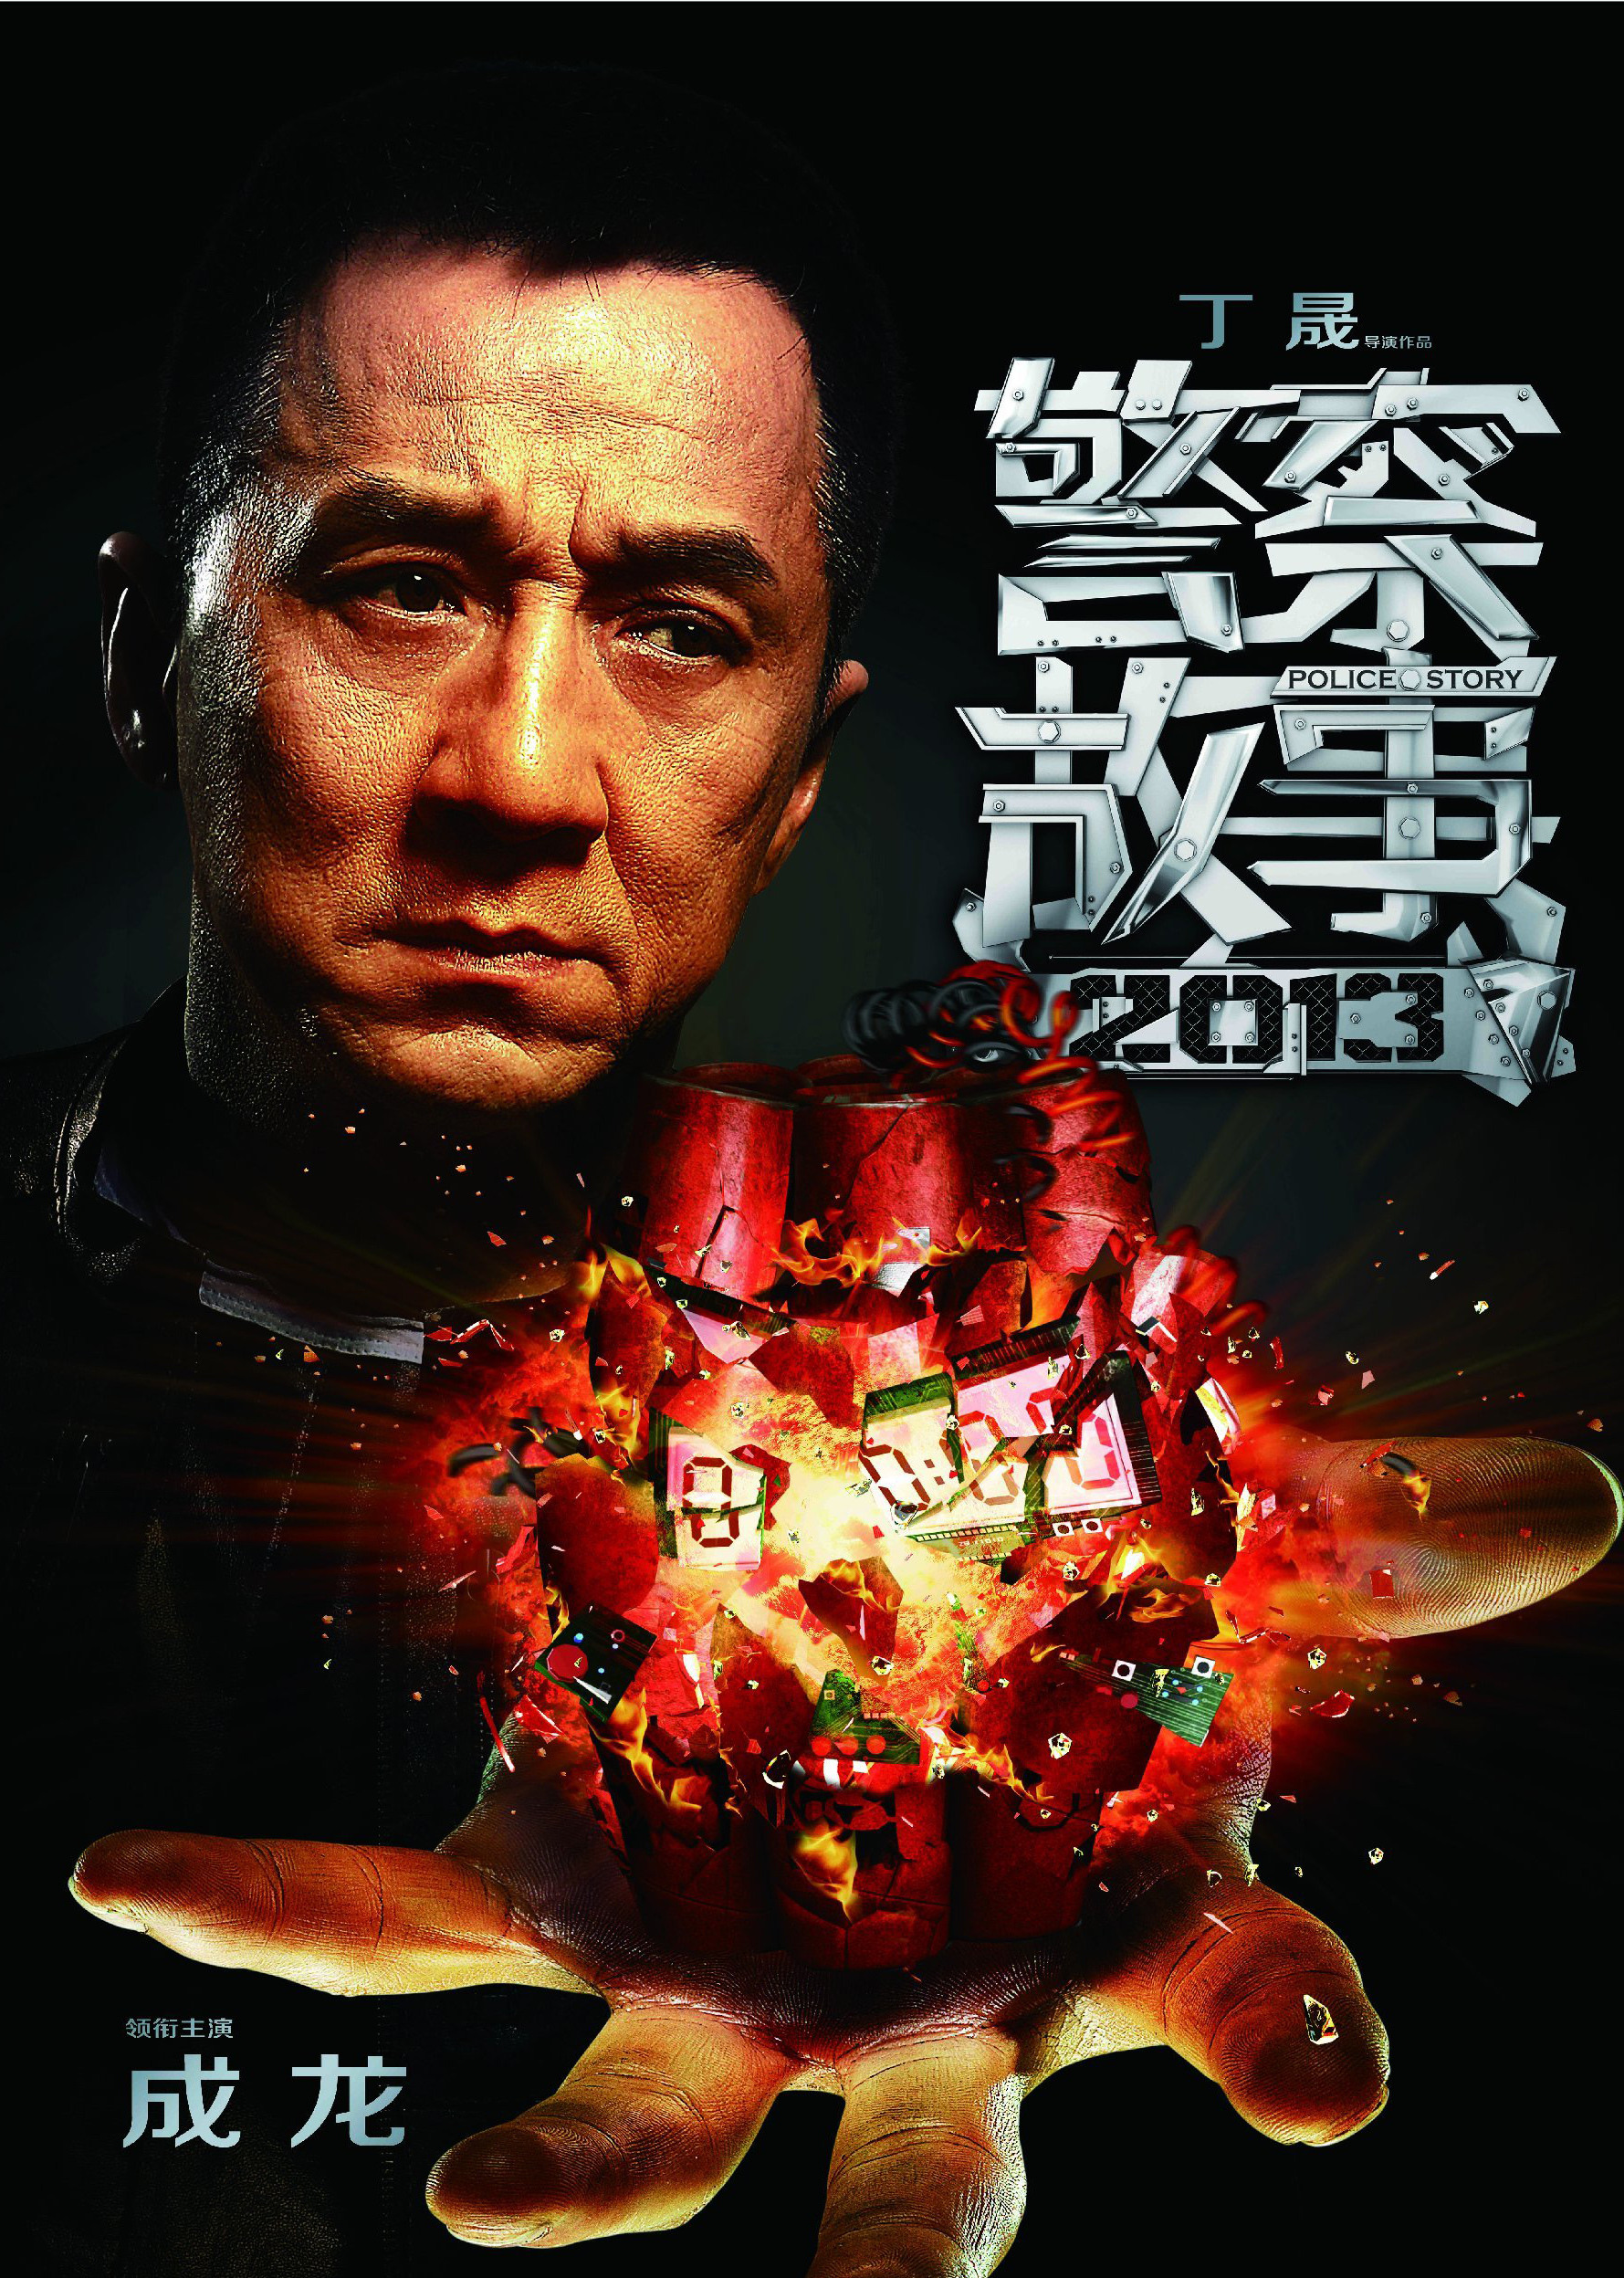 警察故事2013(粤语版)海报图片